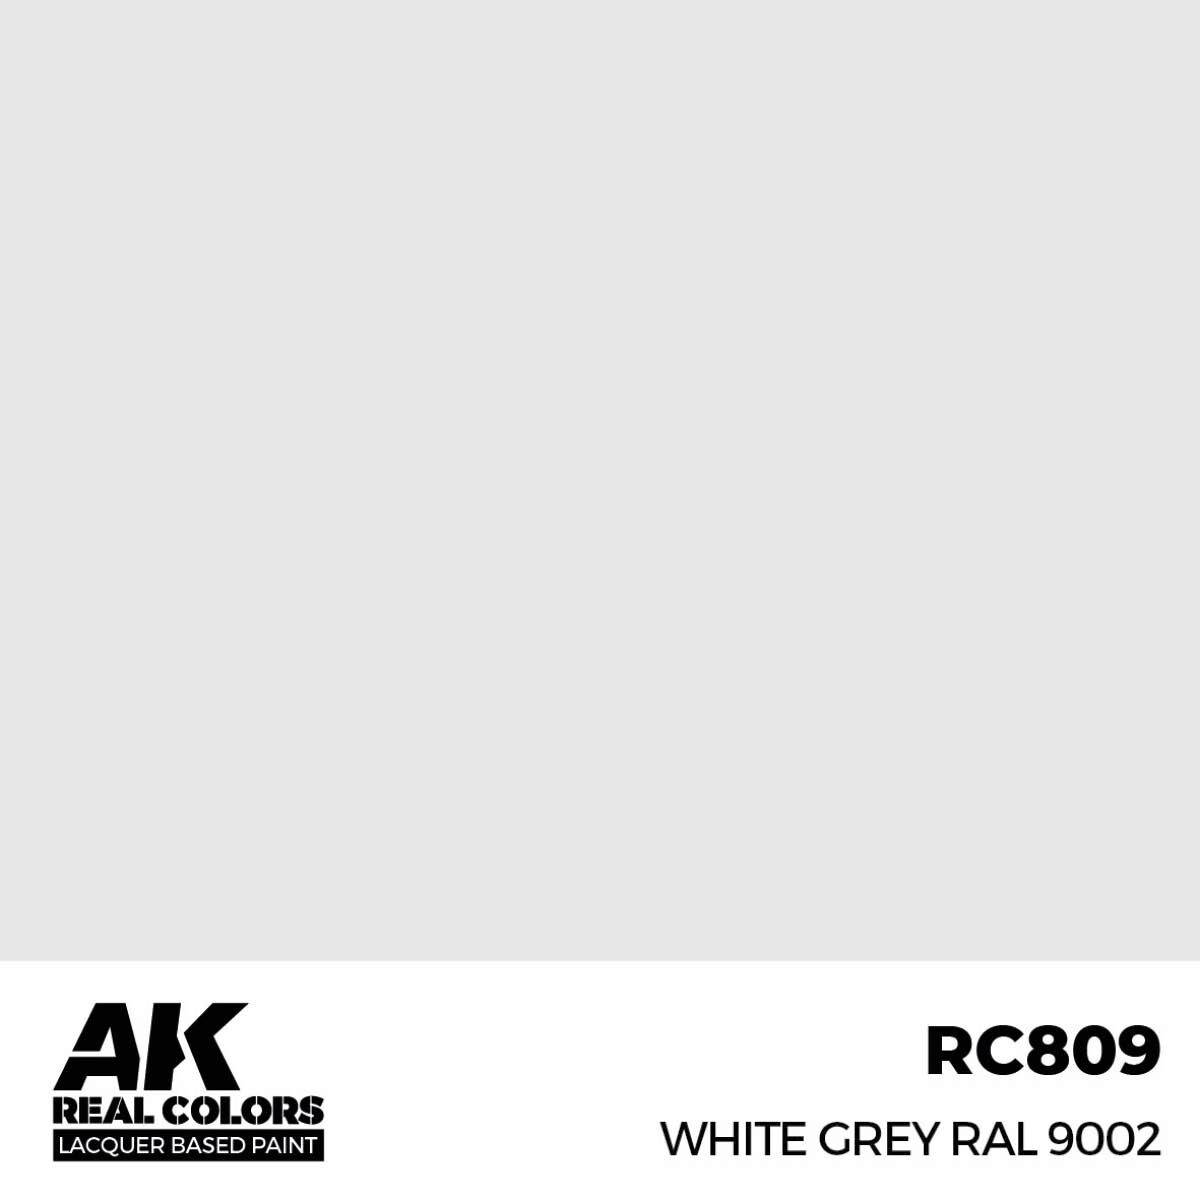 AK RC809 Real Colors White Grey RAL 9002 17 ml.